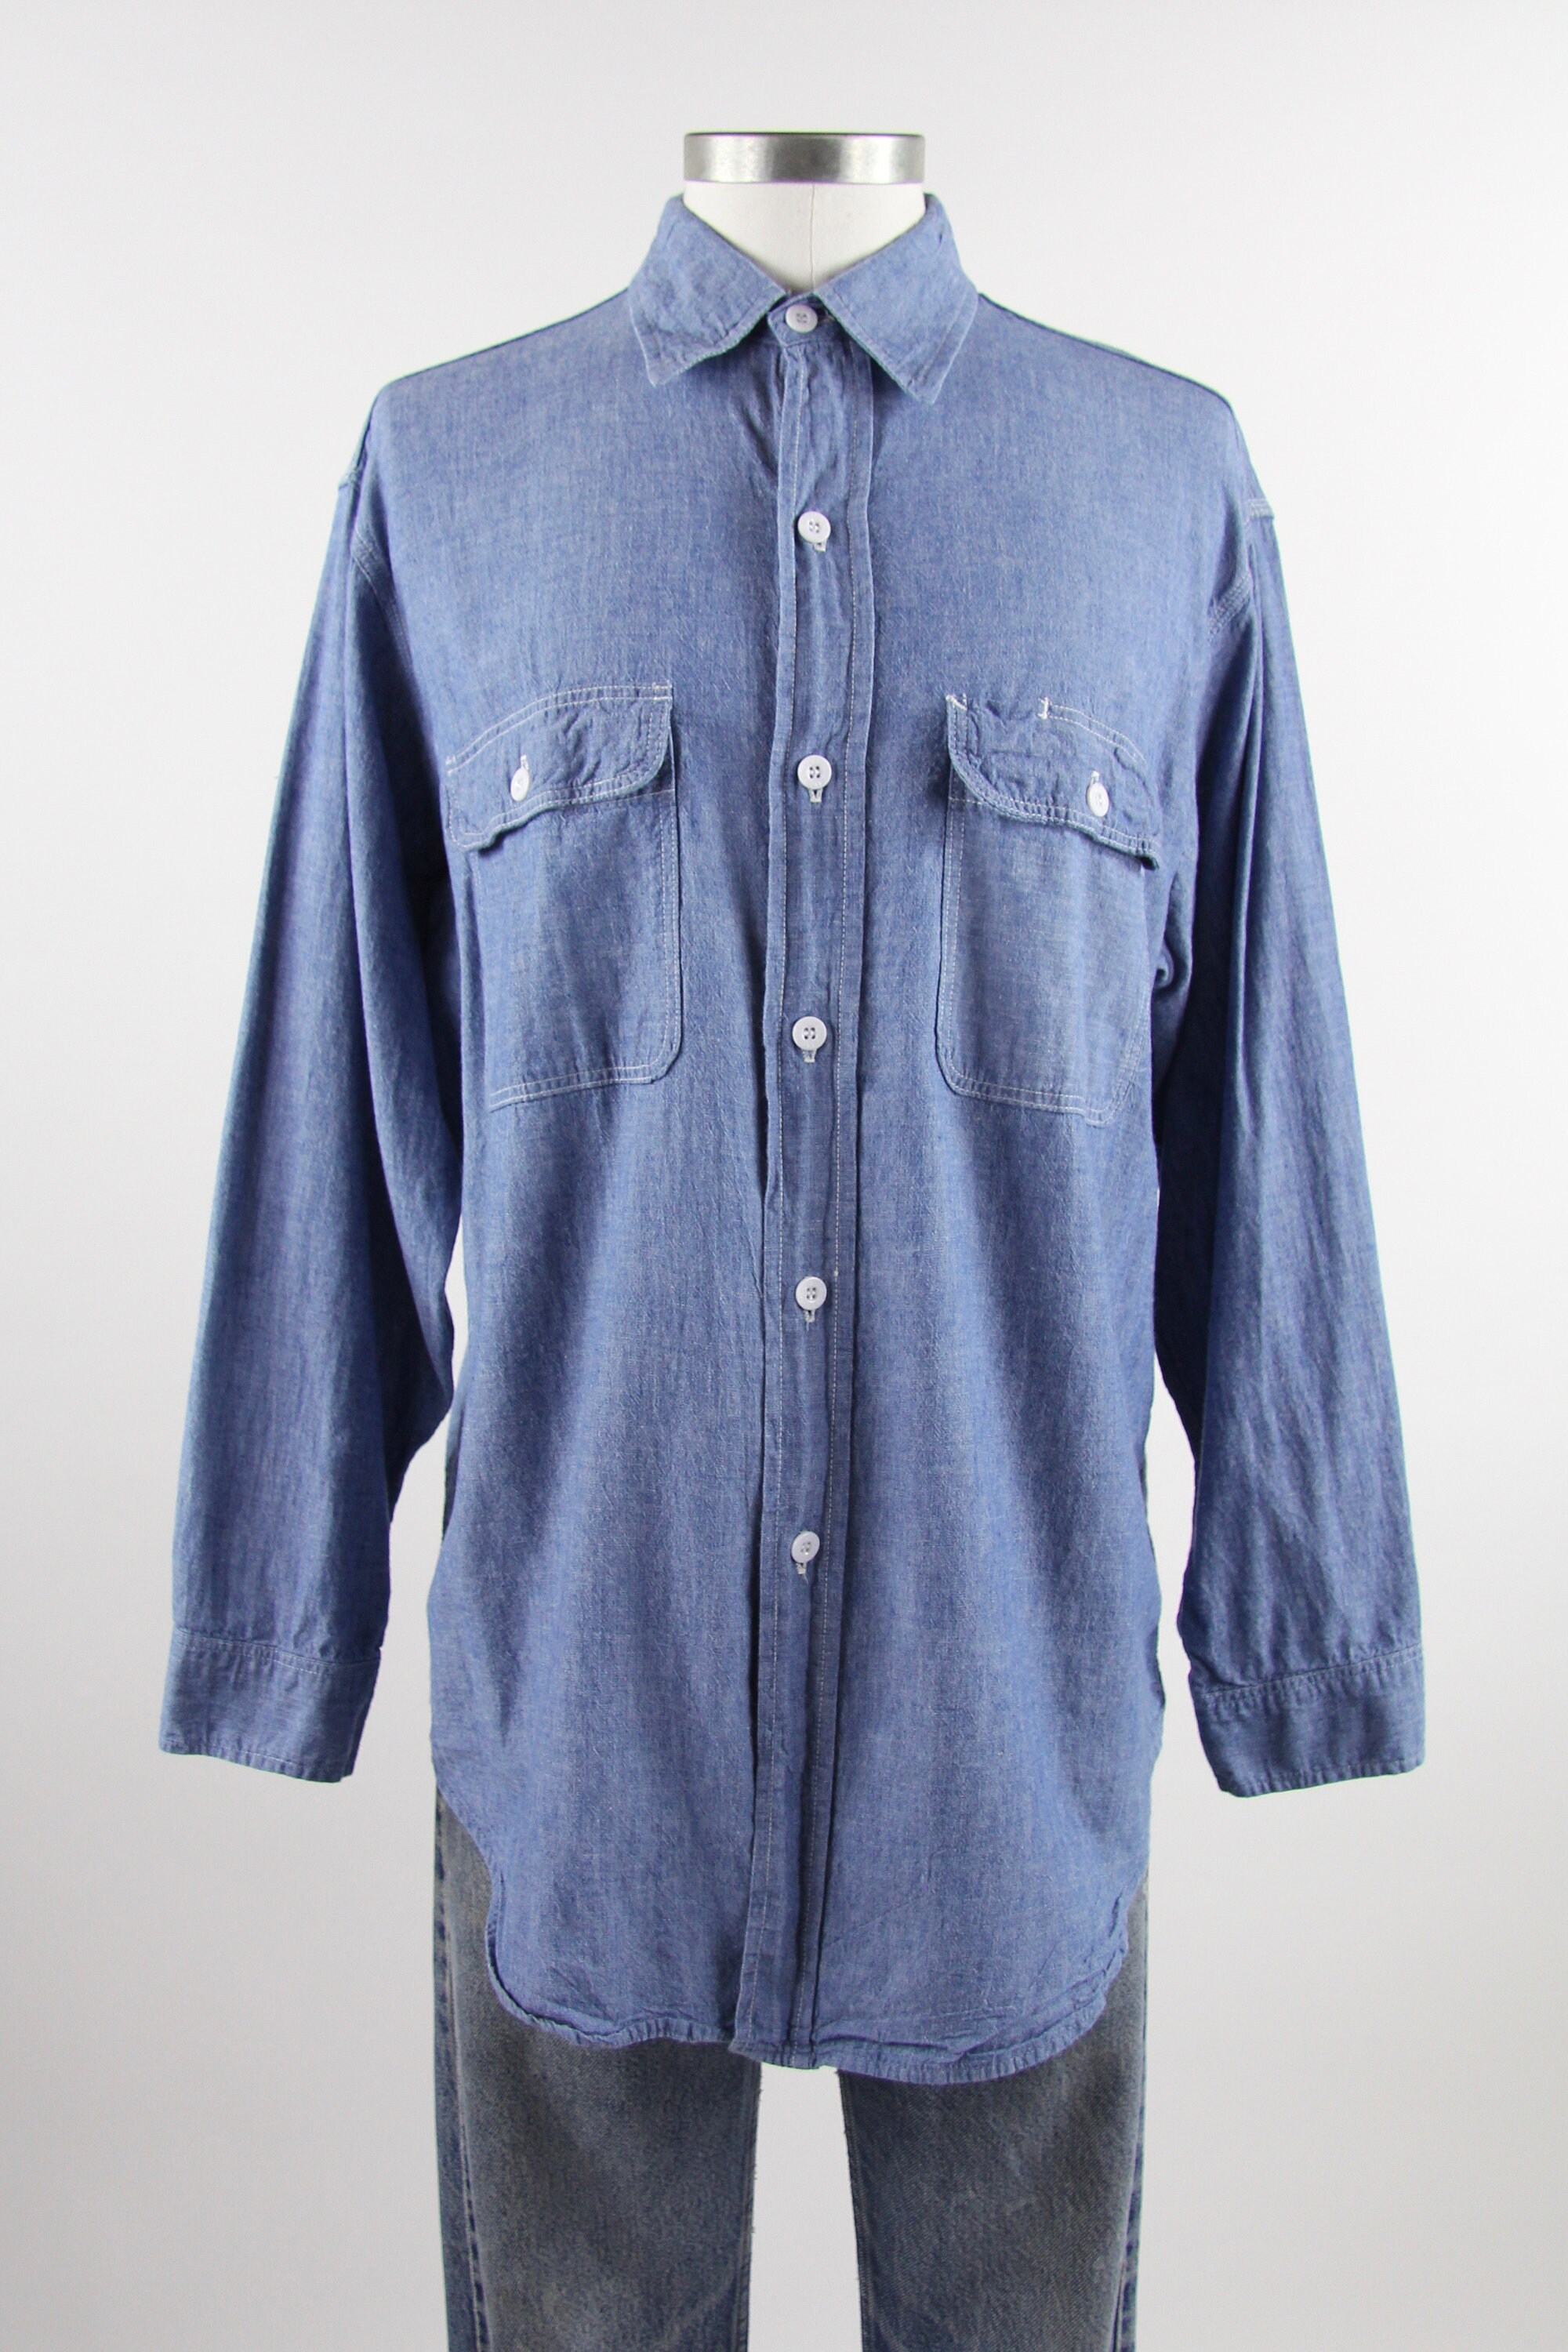 Chambray Men's Shirt JC Penny Big Mac Cotton Button Down Shirt Vintage ...